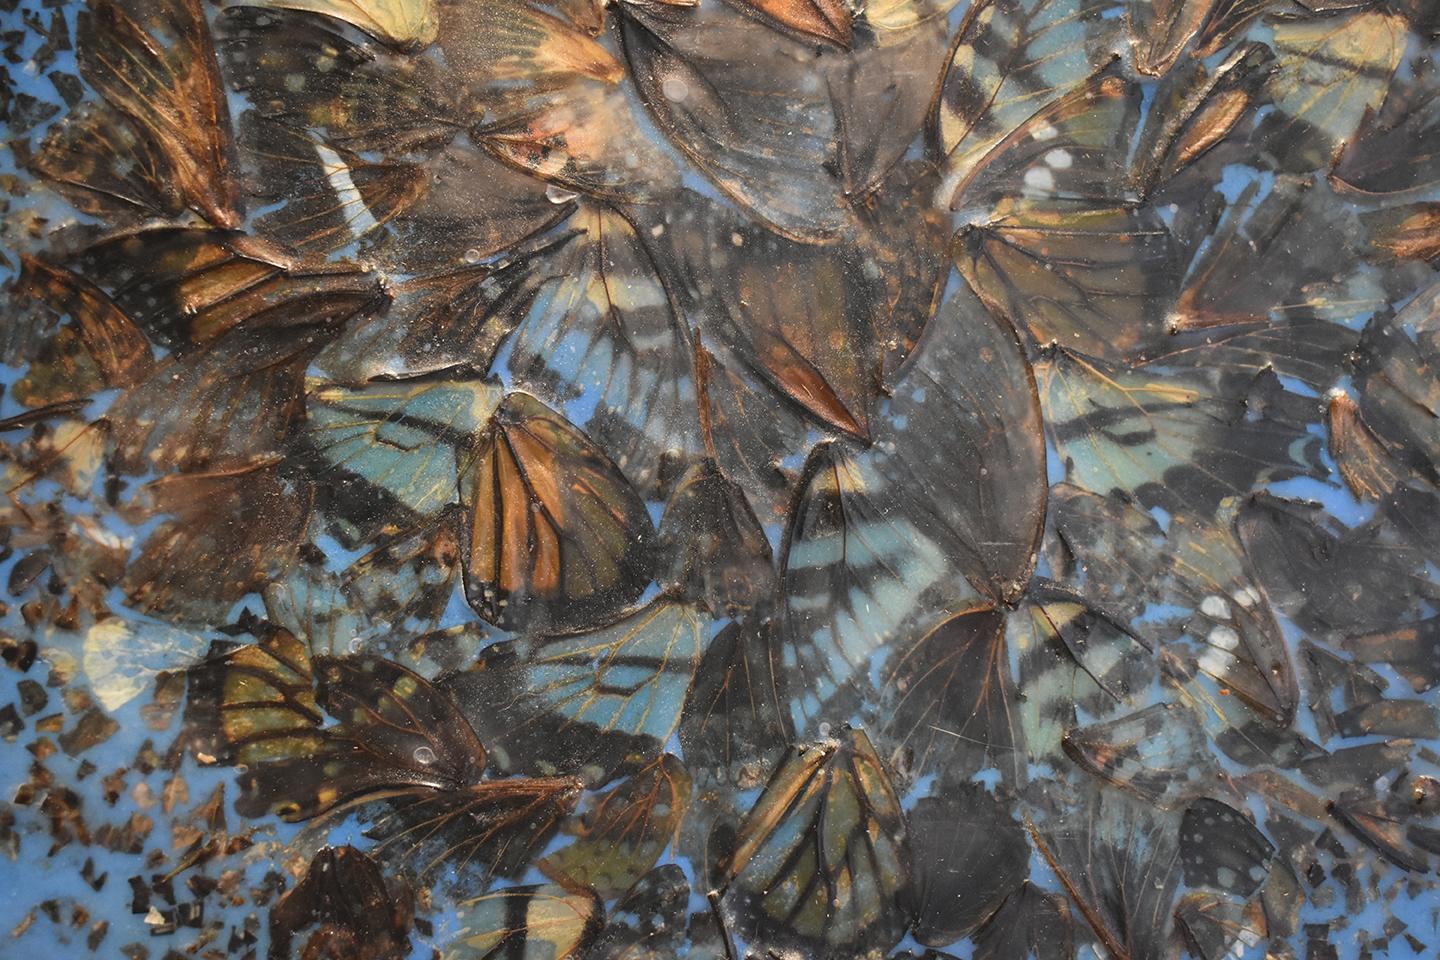 Zeitgenössische abstrakte blaue Enkaustik Malerei auf Tafel mit Schmetterlingsflügeln und natürlichem Material gemacht
Kakophonie 2, 2017
12 x 12 Zoll auf Holzplatte
Schmetterlingsflügel und blaue Enkaustik auf Platte
Hängt an einem D-Ring, bereit